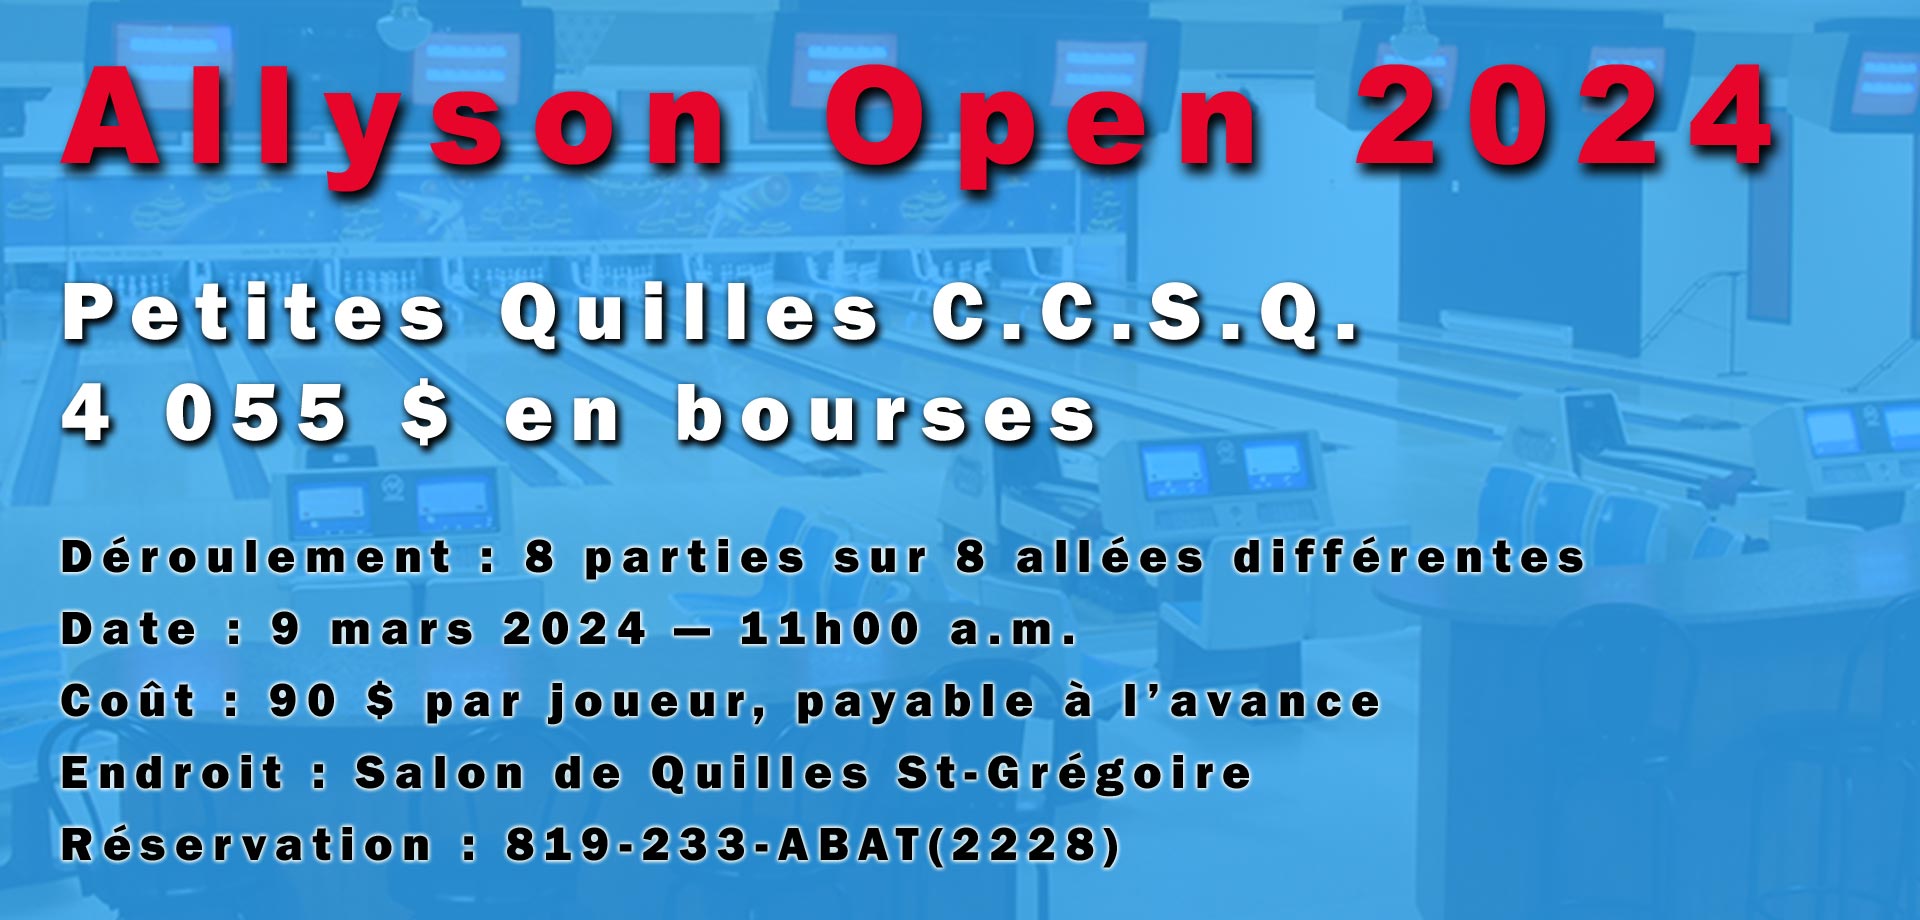 Tournoi Allyson Open 2024